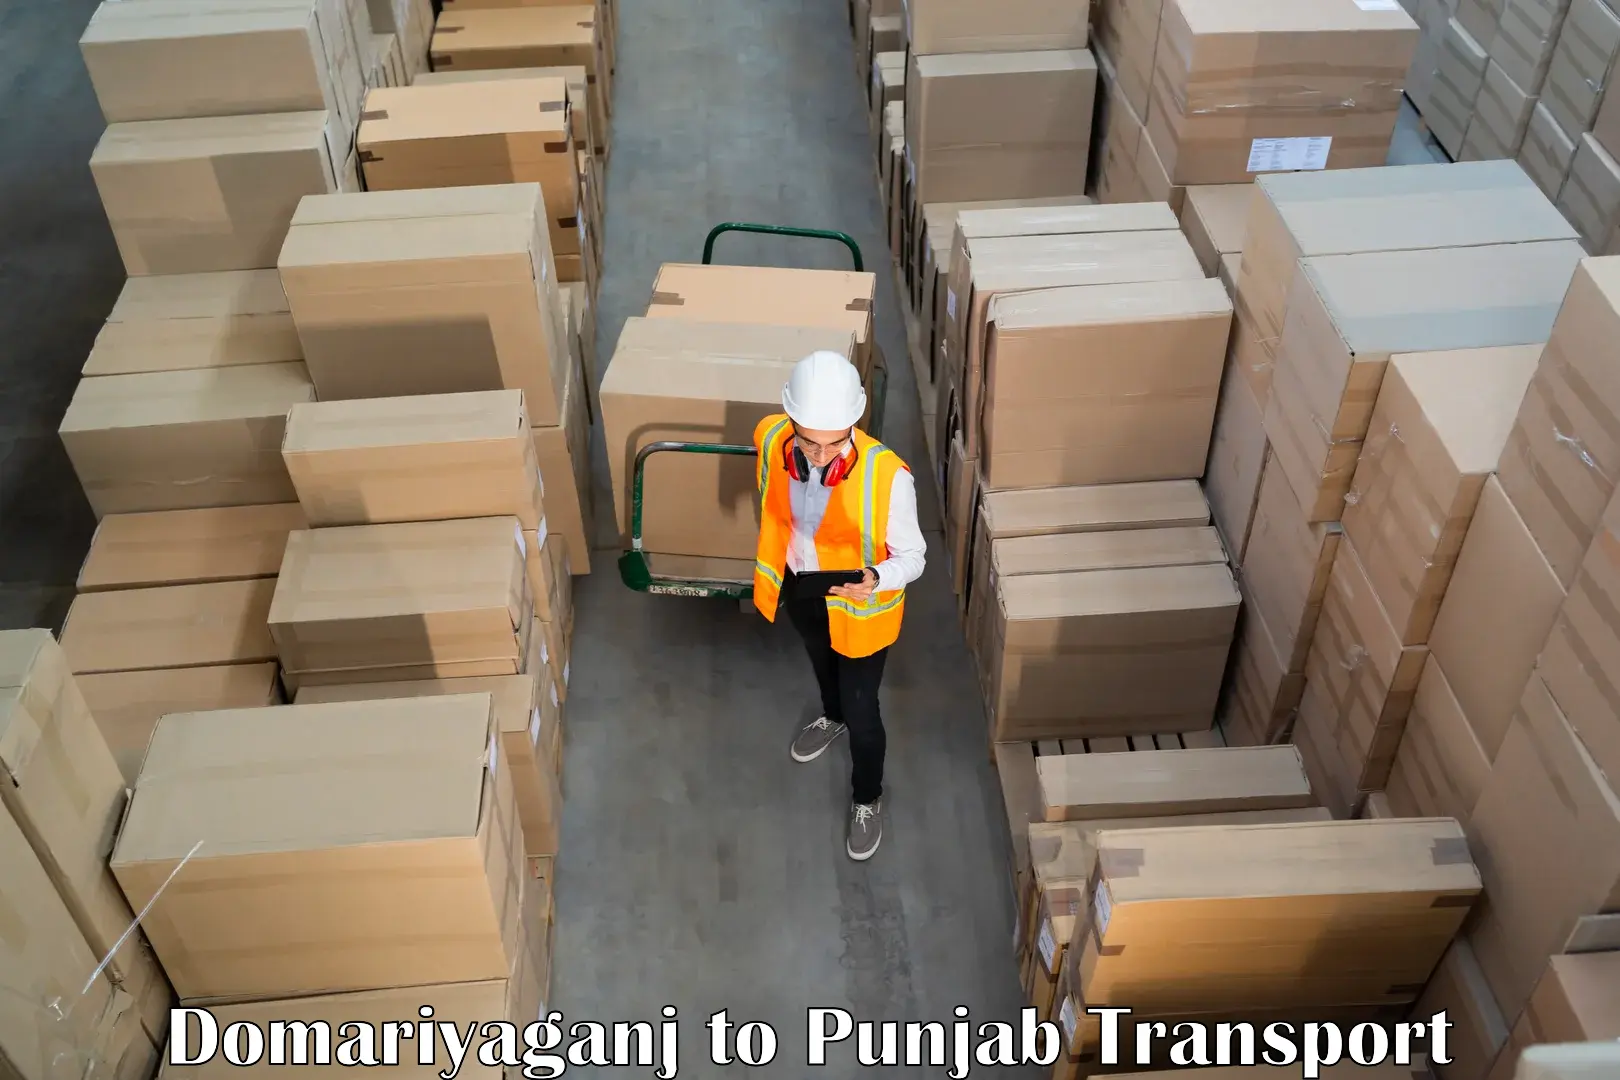 Shipping partner Domariyaganj to Sri Hargobindpur